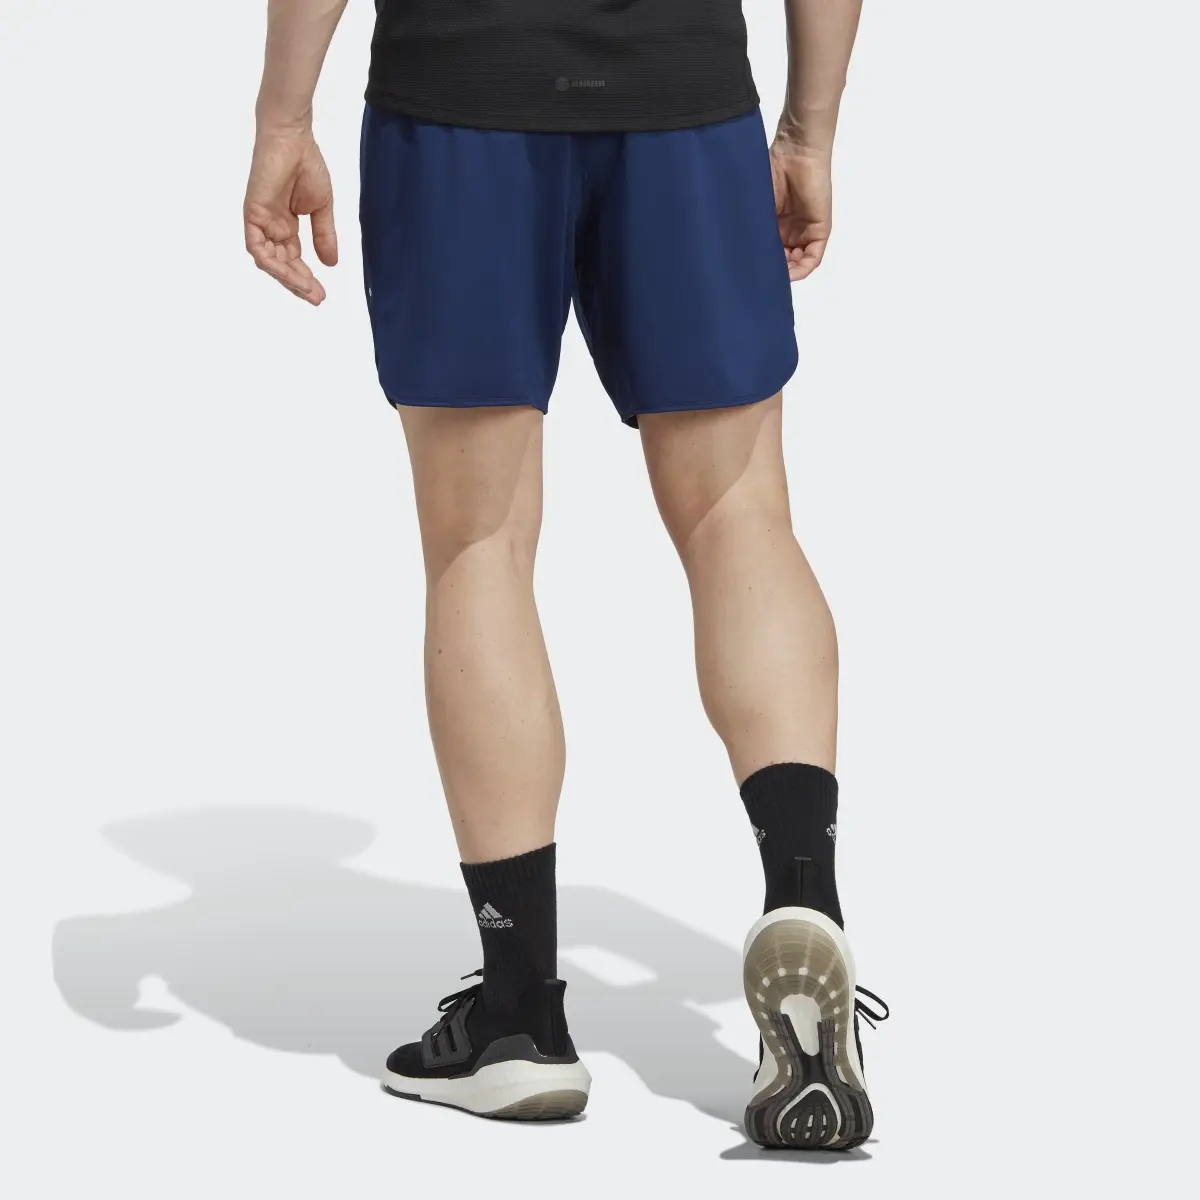 Adidas Designed for Training Shorts. 2